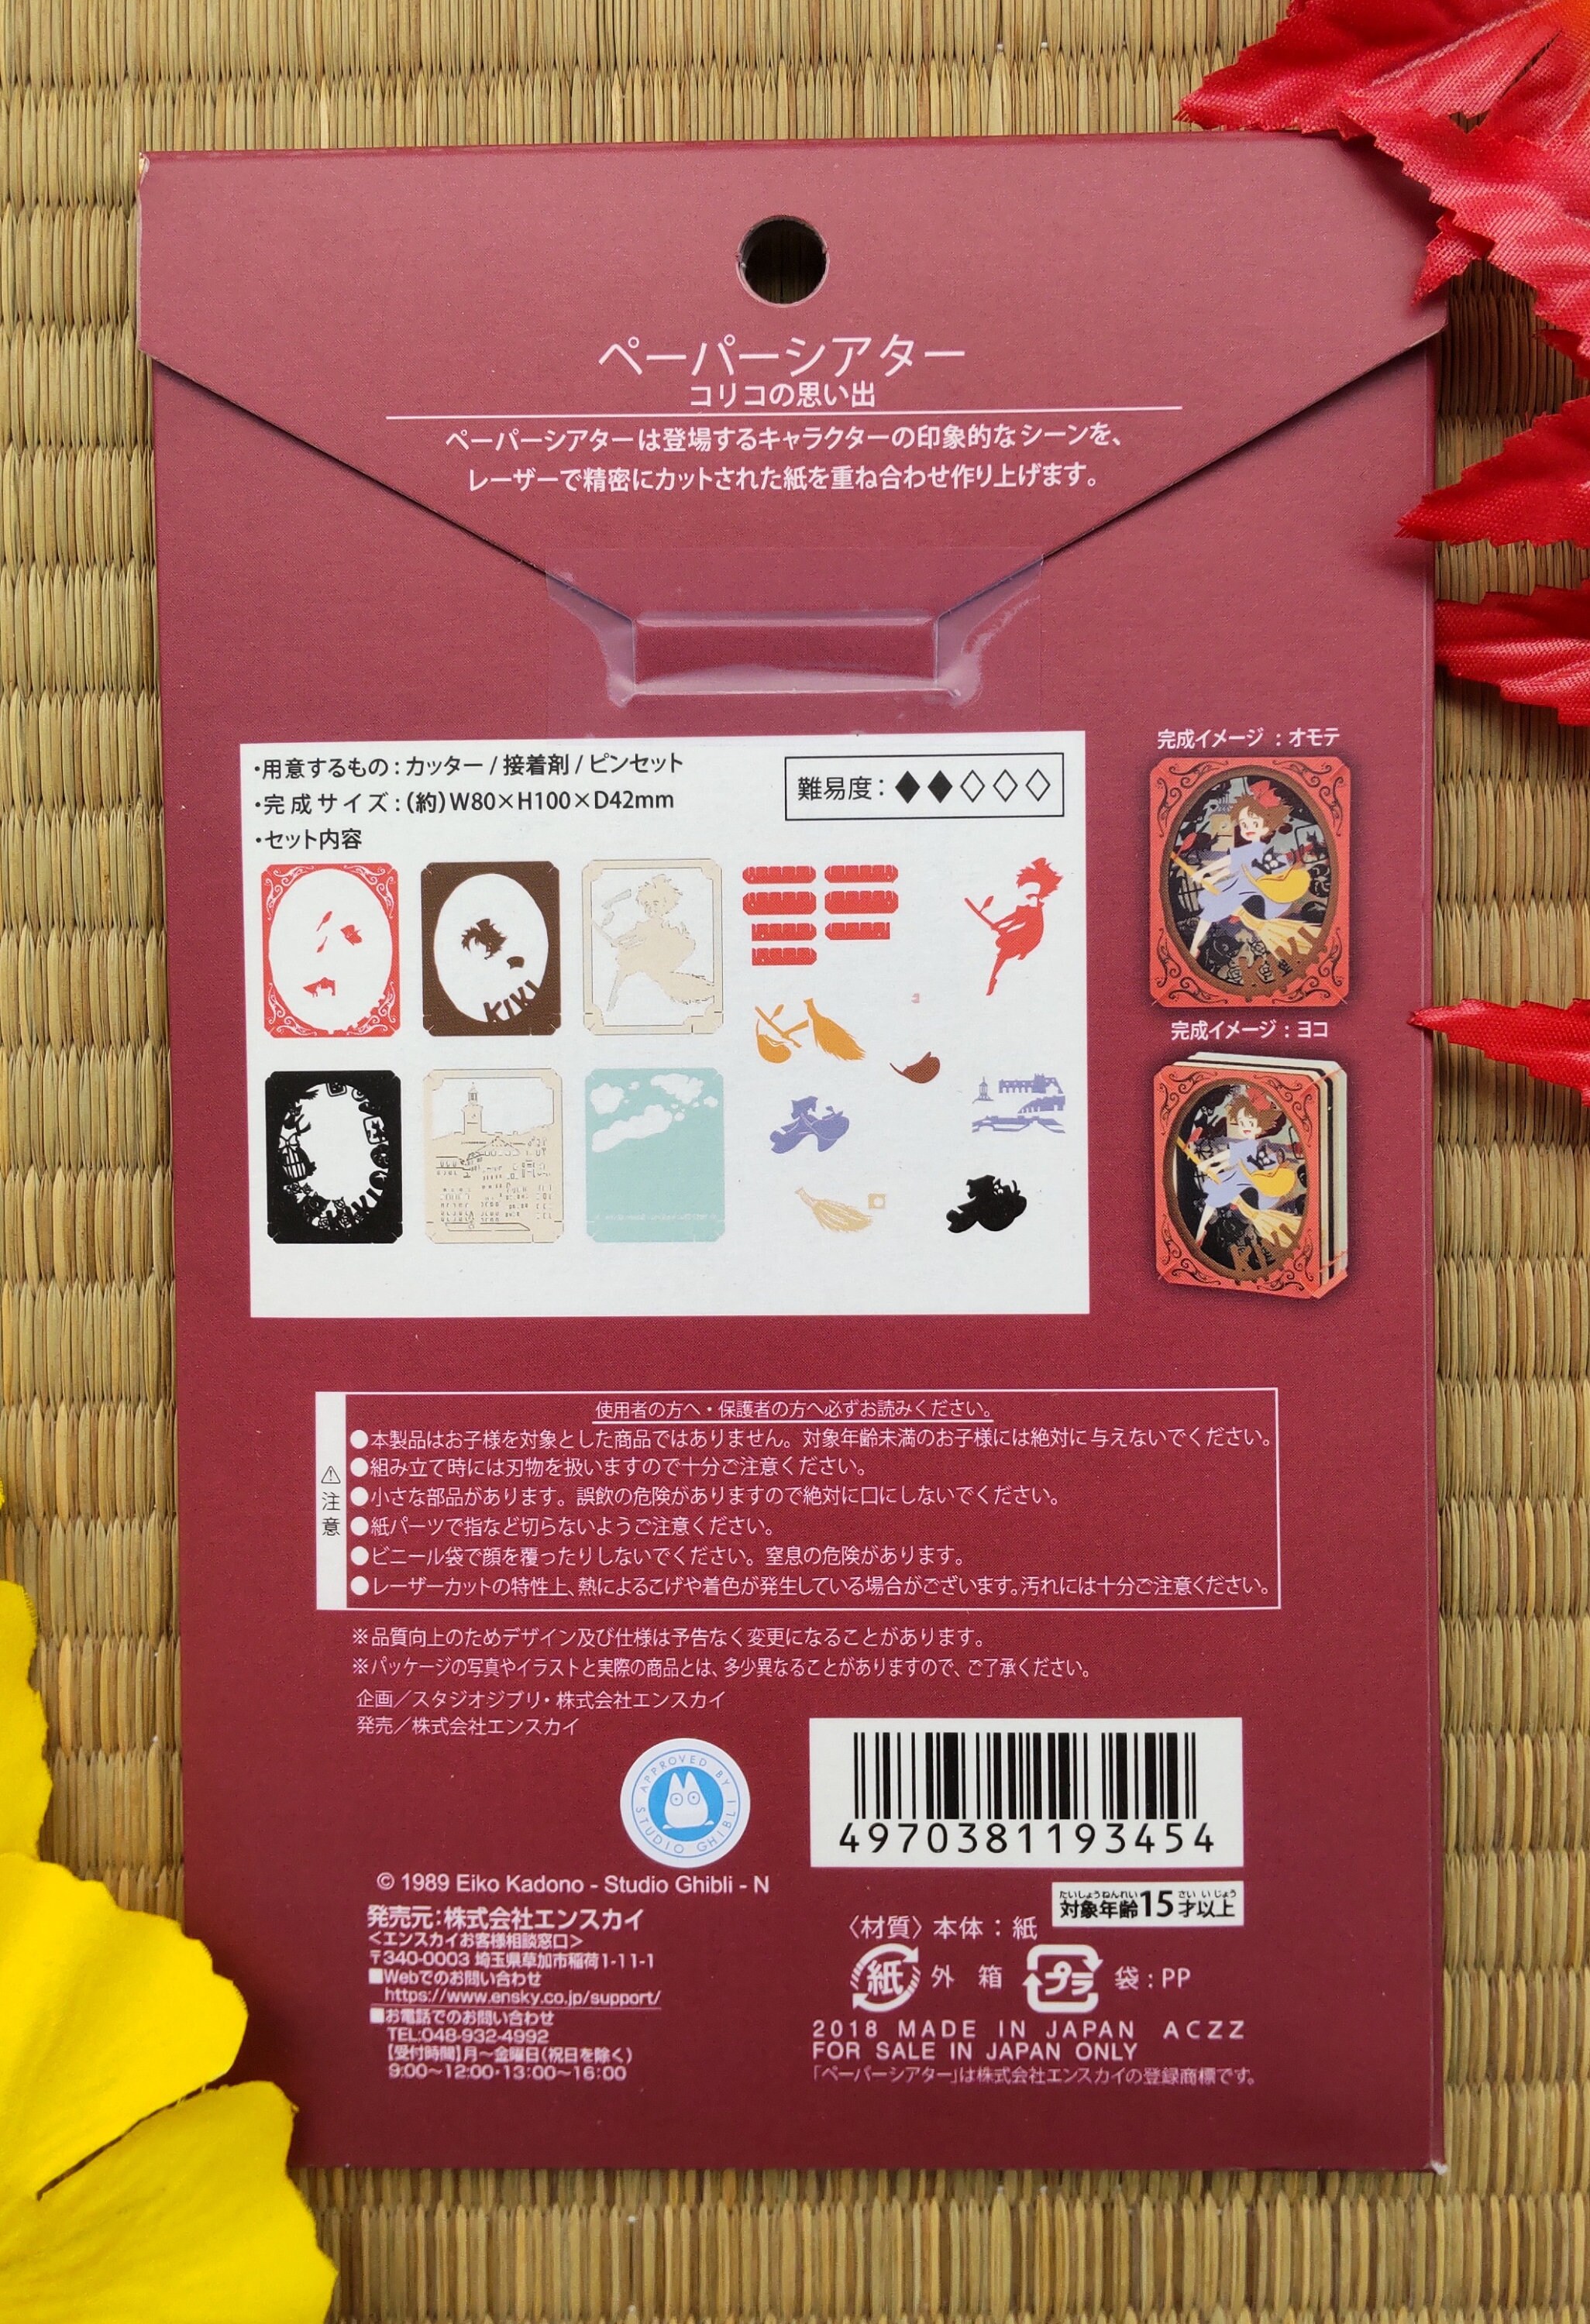 Studio Ghibli Kiki's Delivery Service Paper Theater, 1 Unit - Kroger